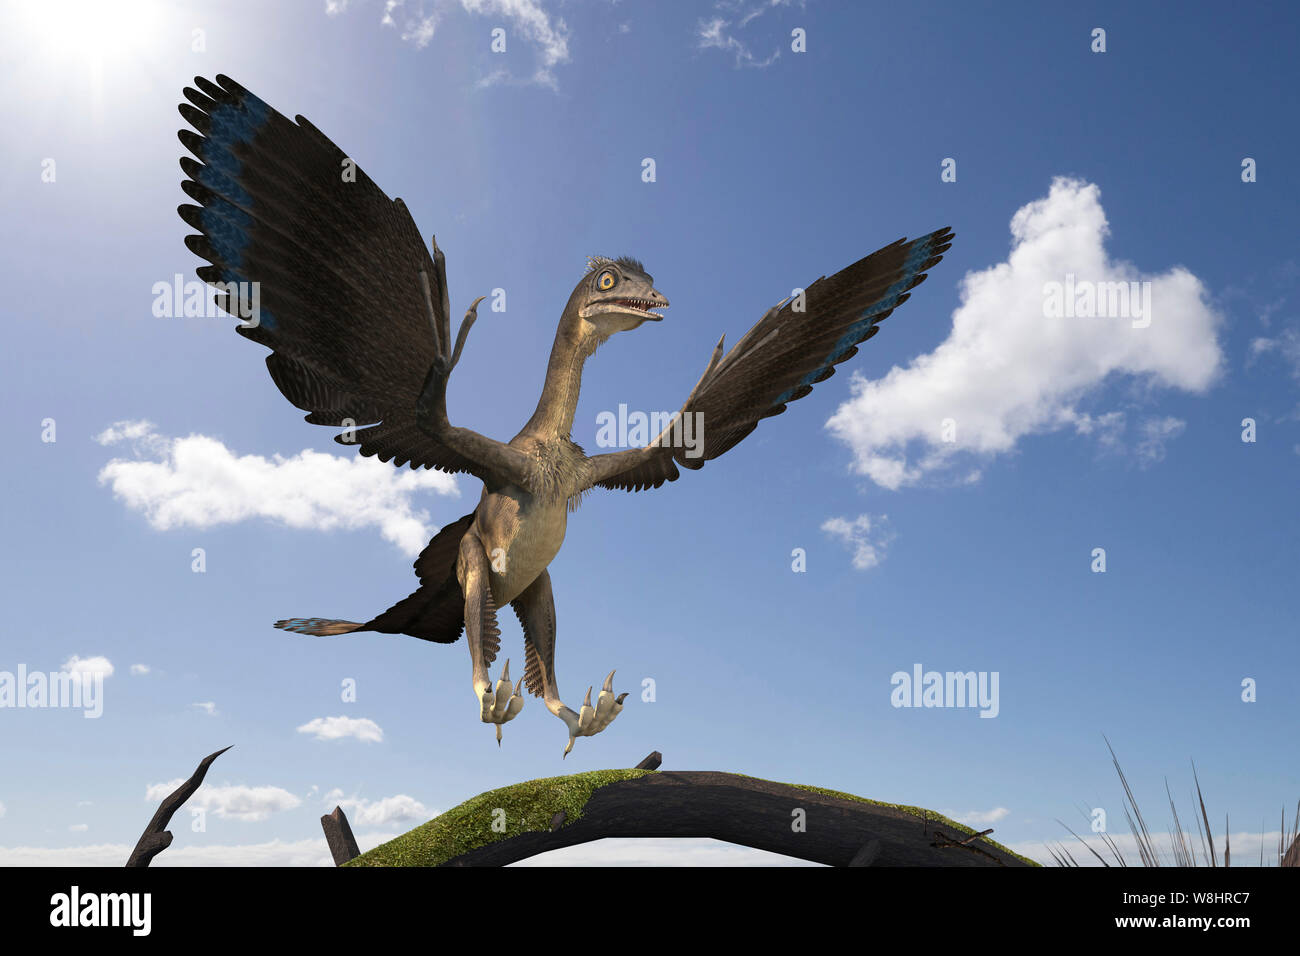 Archaeopteryx dinosauro, illustrazione. Questi uccelli come i dinosauri vivevano circa 150 milioni di anni fa durante il tardo giurassico. Foto Stock